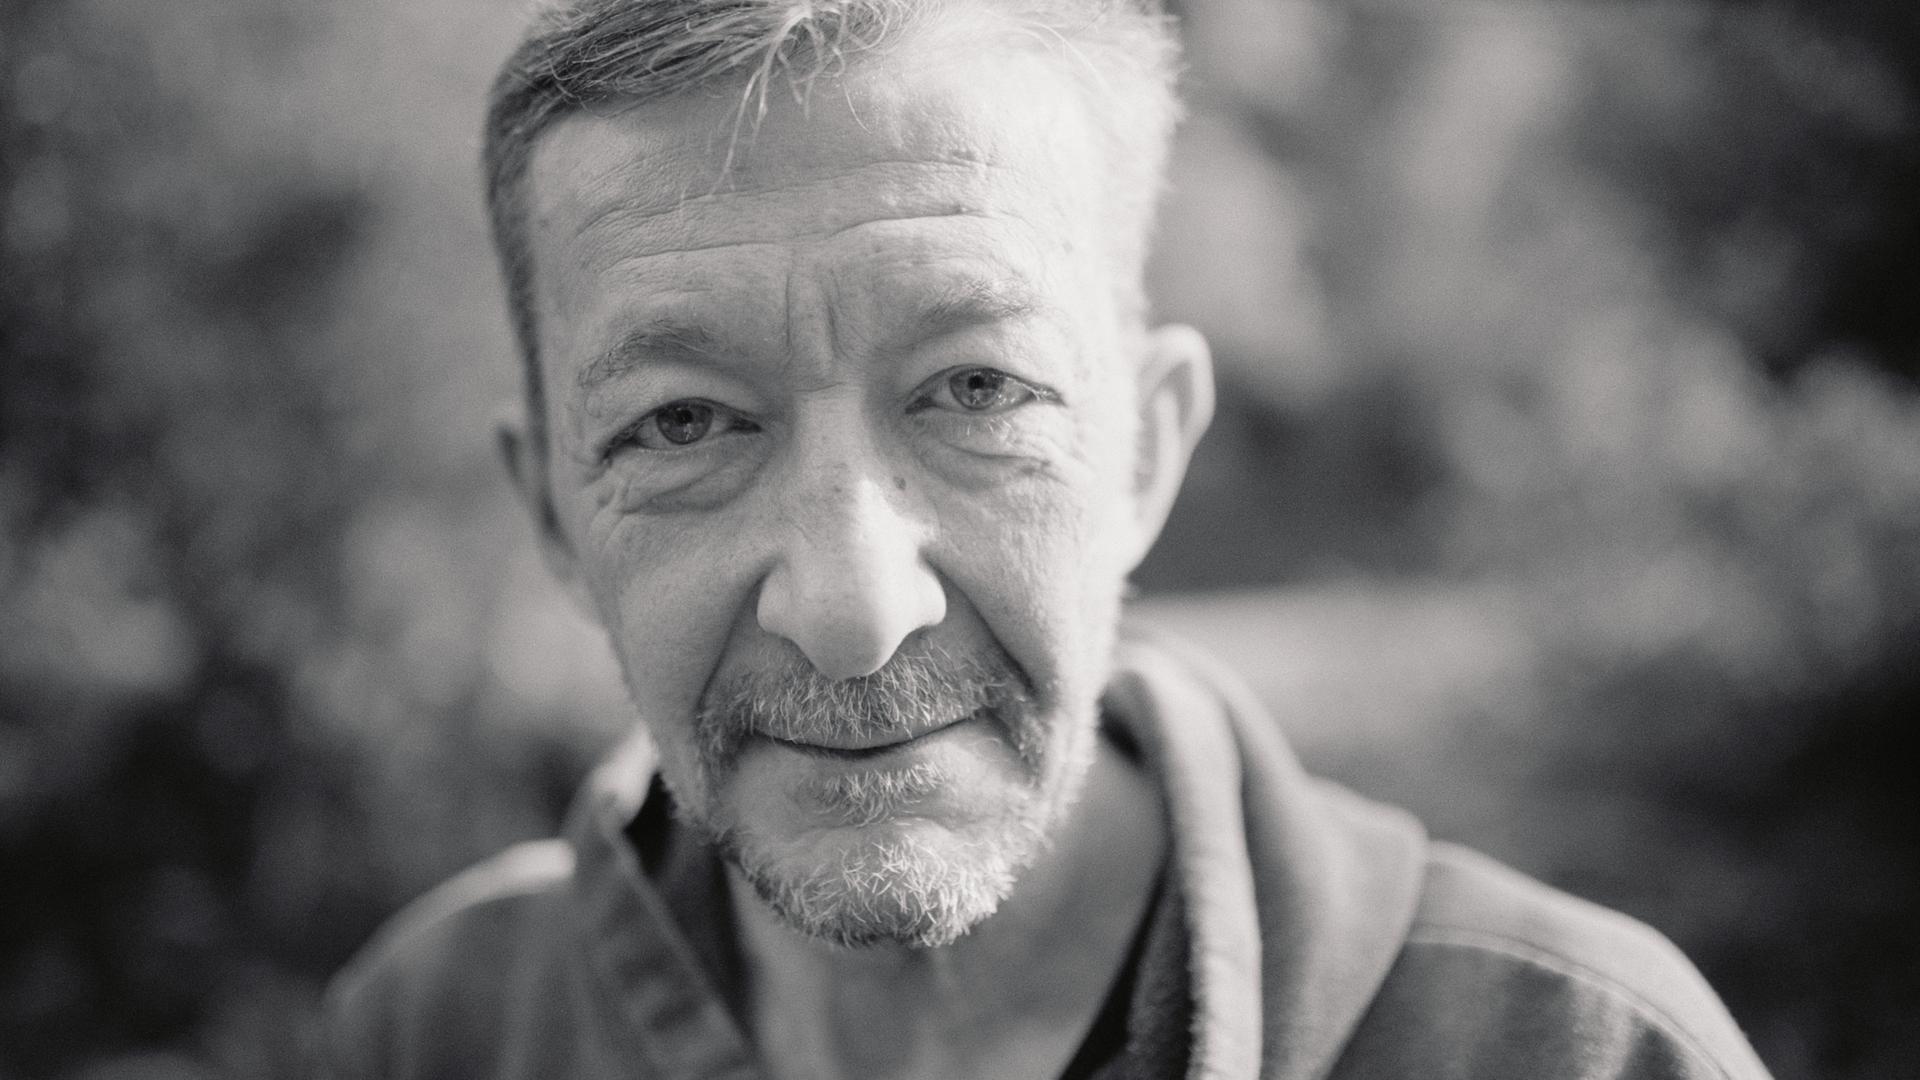 Dennis Delcroix recuperou depois de cair nas ruas. É o protagonista do documentário 'Croque Monsieur', sobre a população sem-abrigo do Luxemburgo.